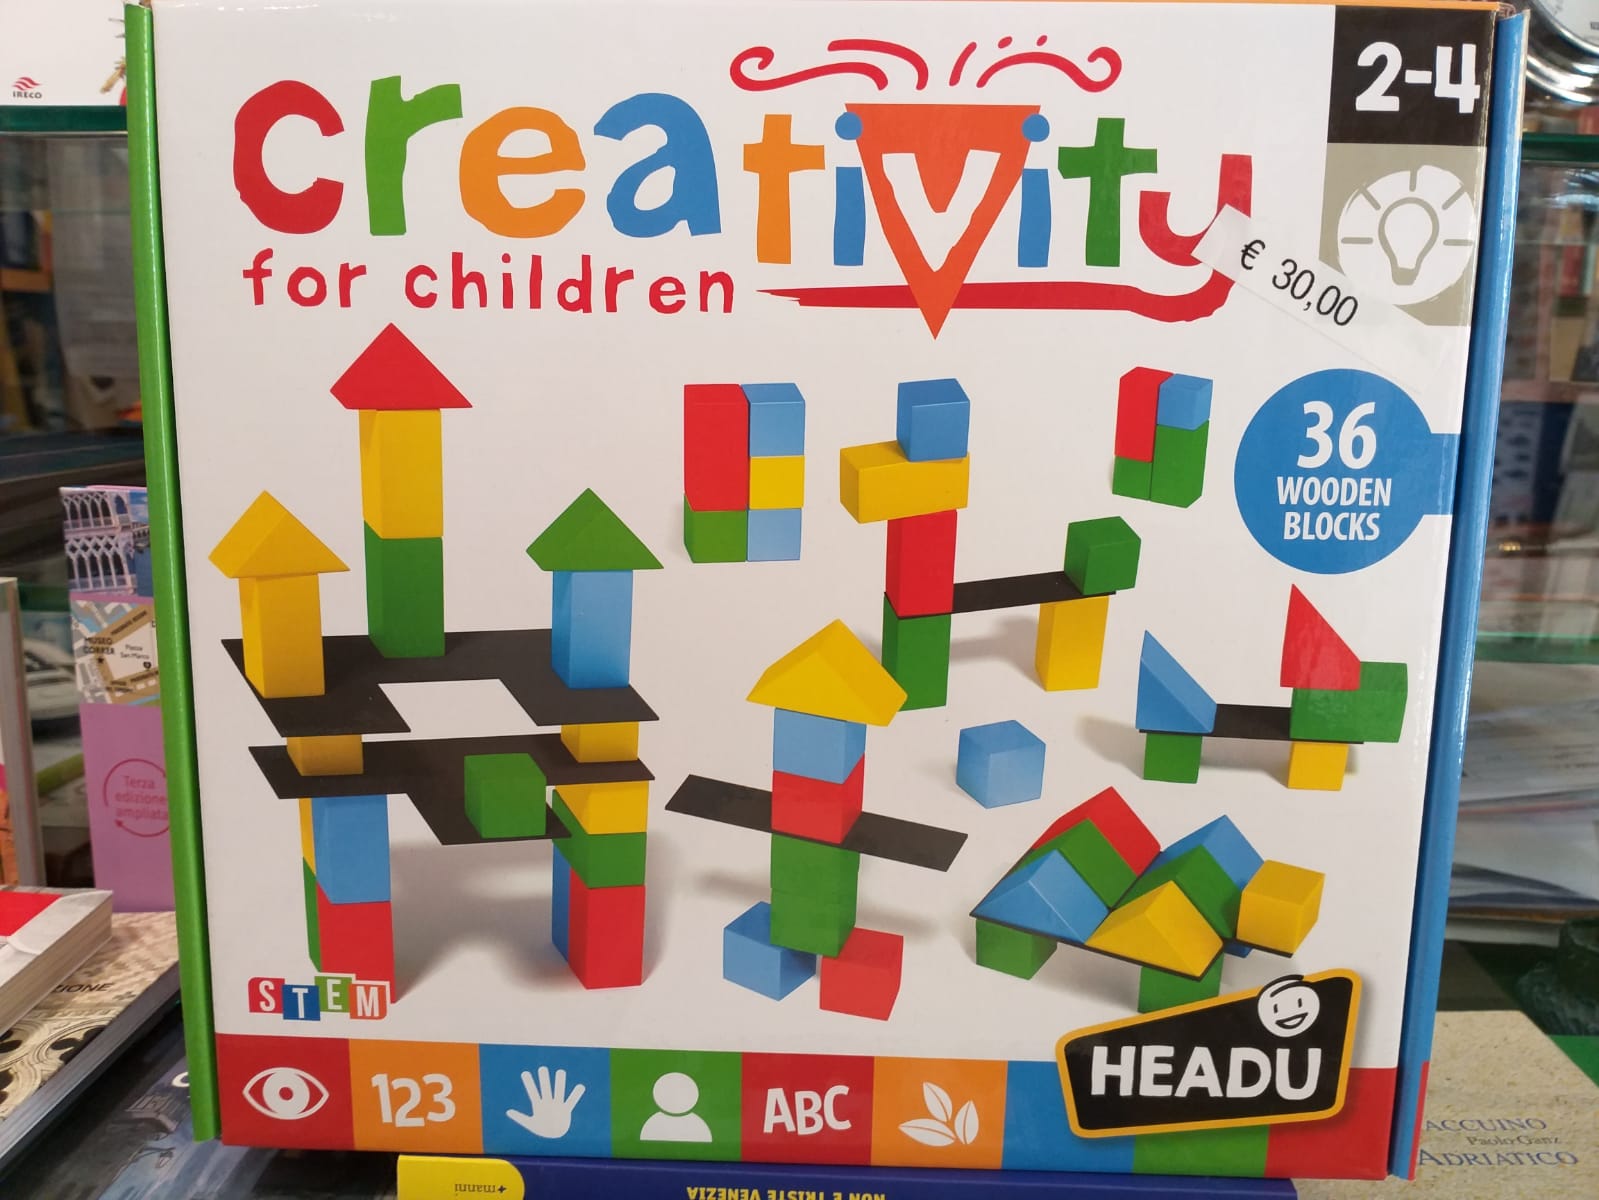 Creativity for children